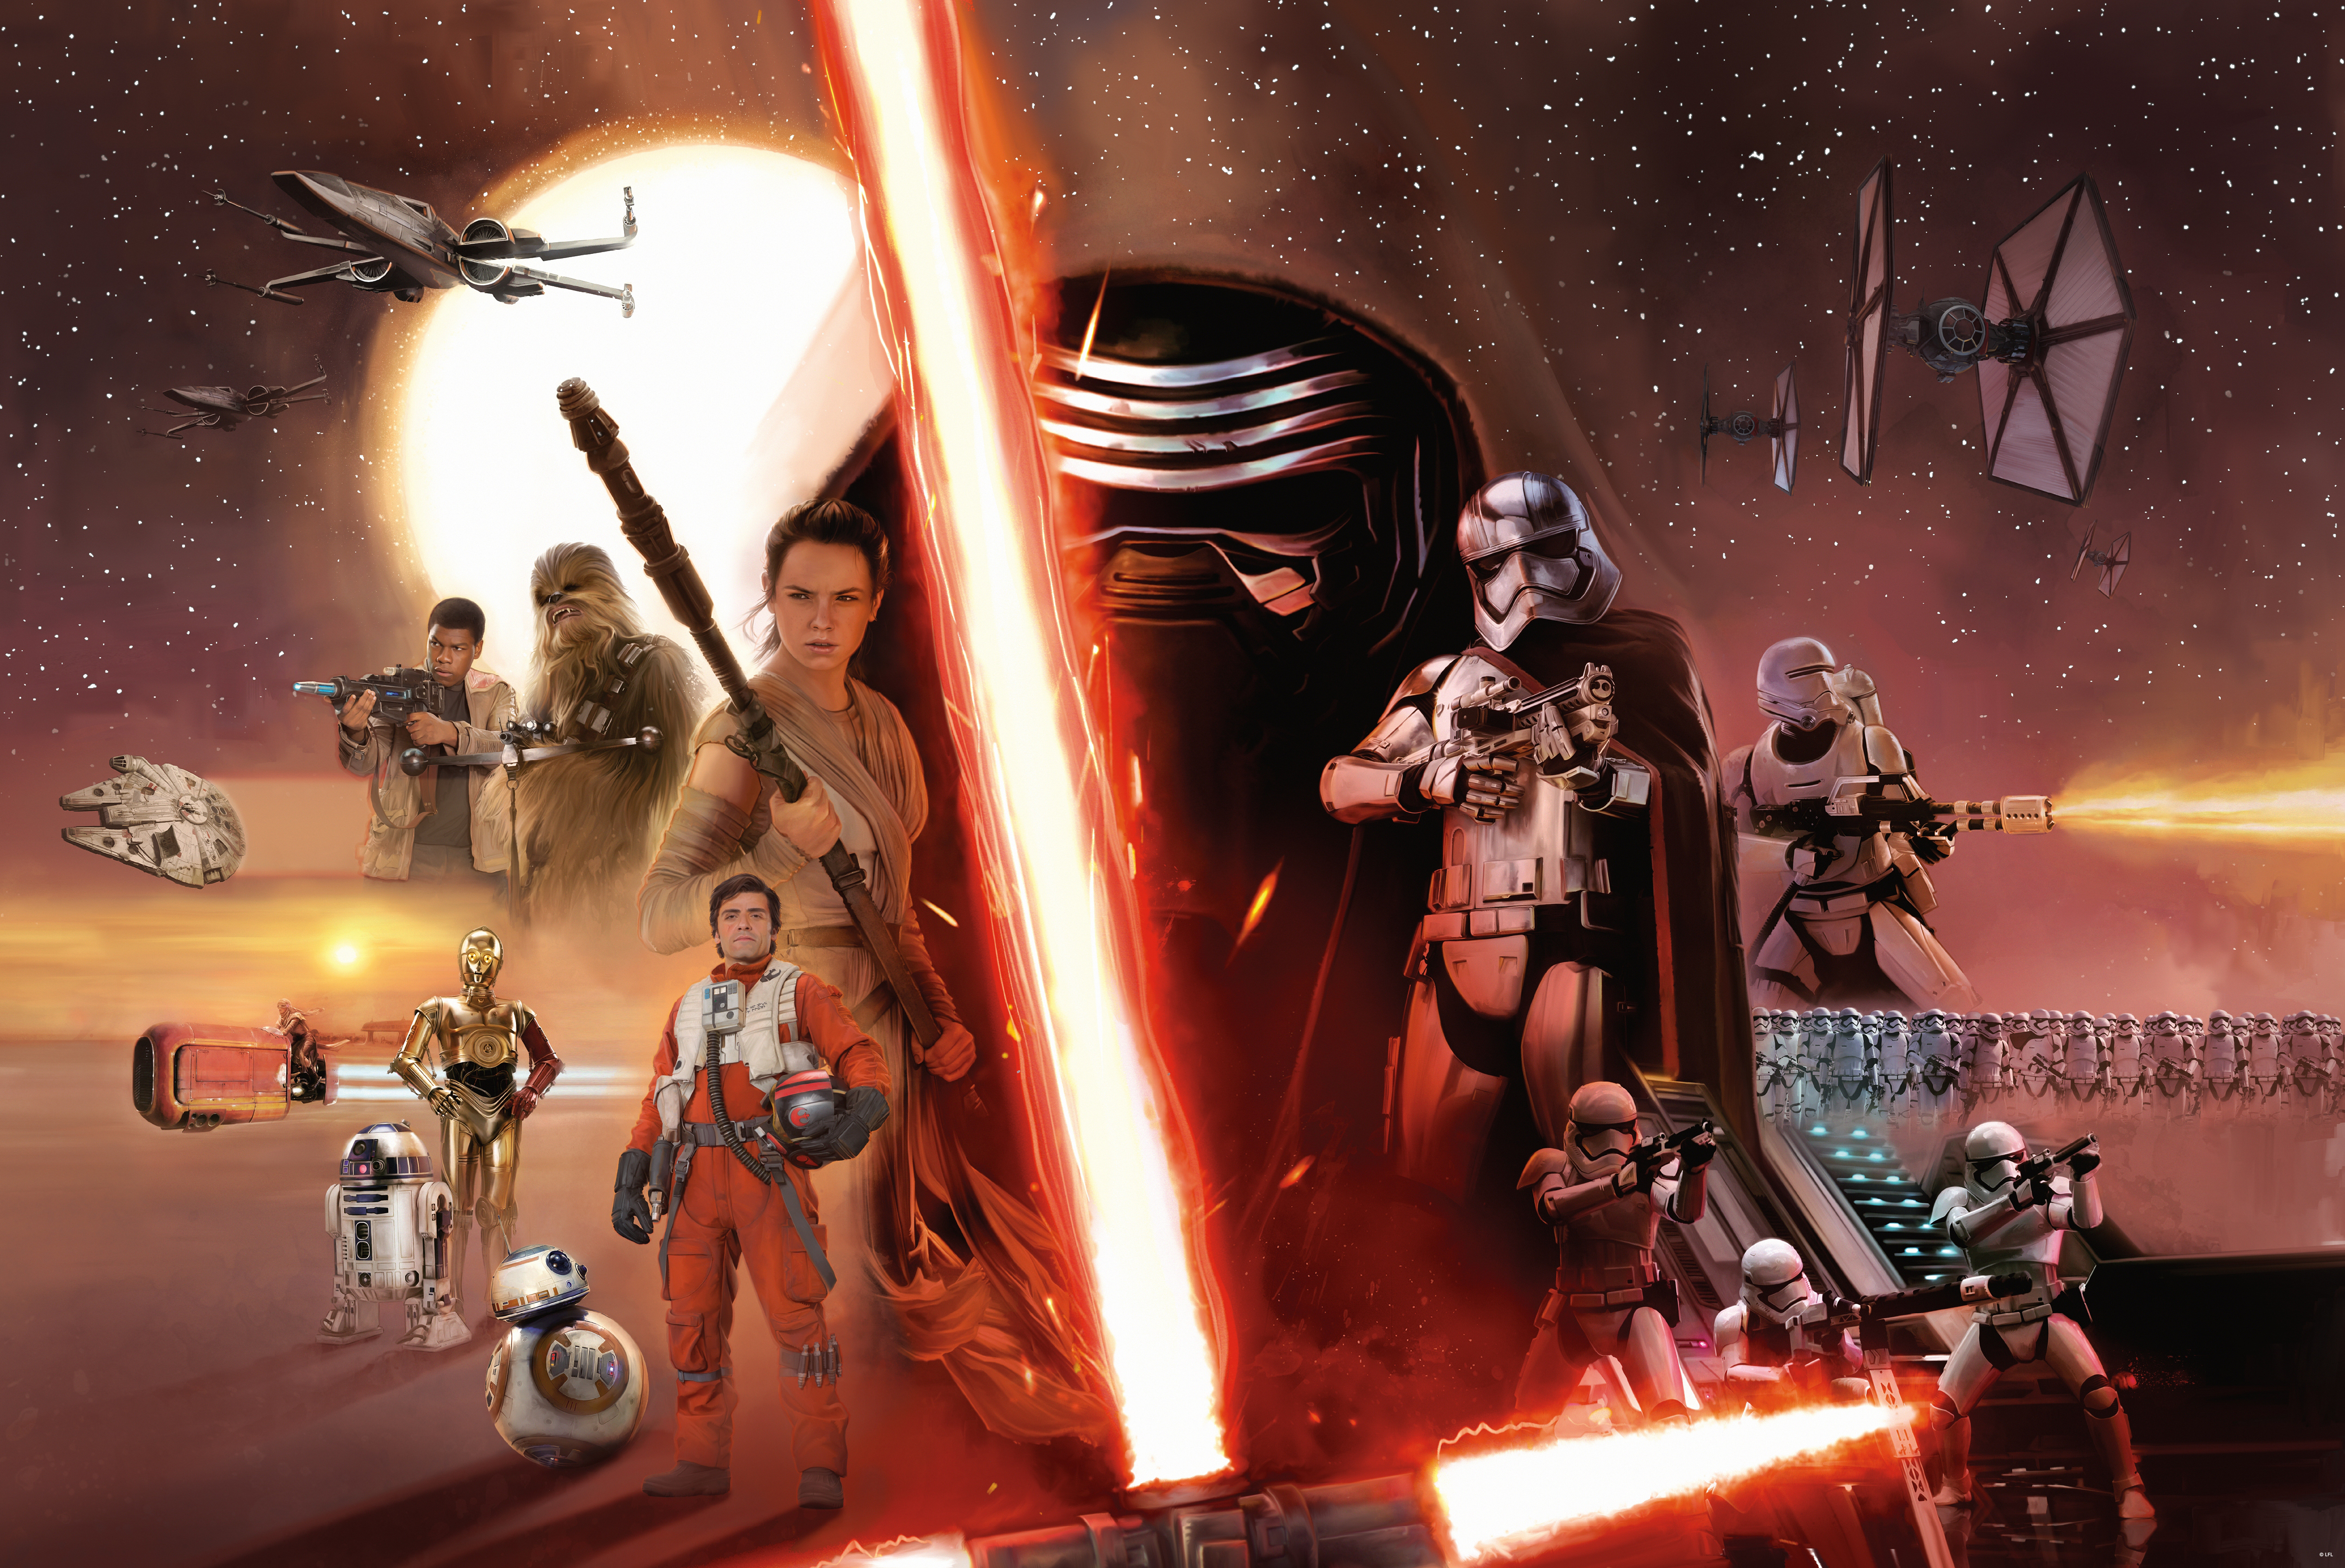 chewbacca, star wars episode vii: the force awakens, c 3po, star wars, movie, captain phasma, finn (star wars), kylo ren, poe dameron, rey (star wars) HD wallpaper